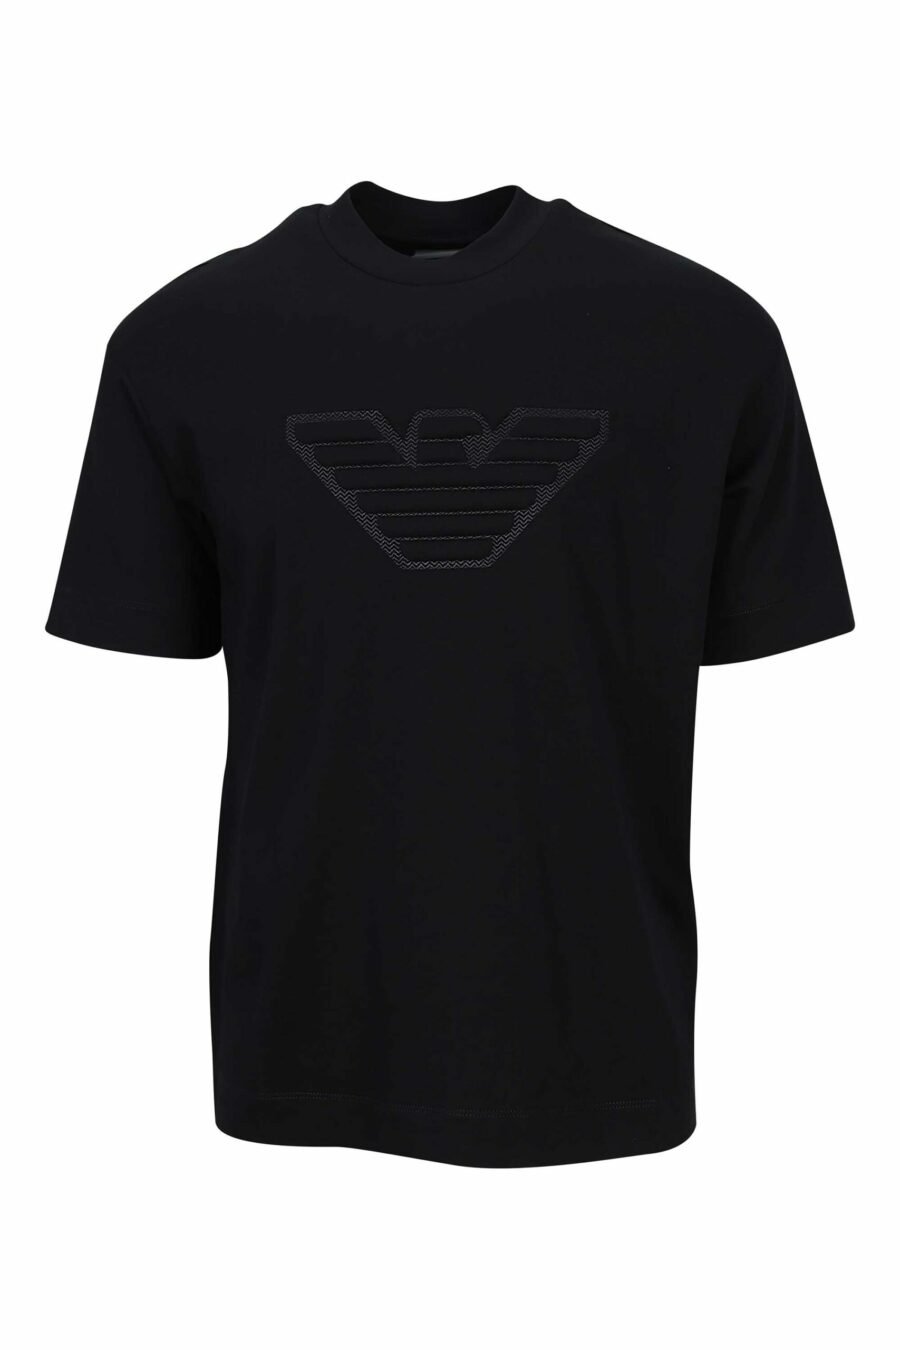 Camiseta negra con maxilogo águila monocromática - 8057970432920 scaled